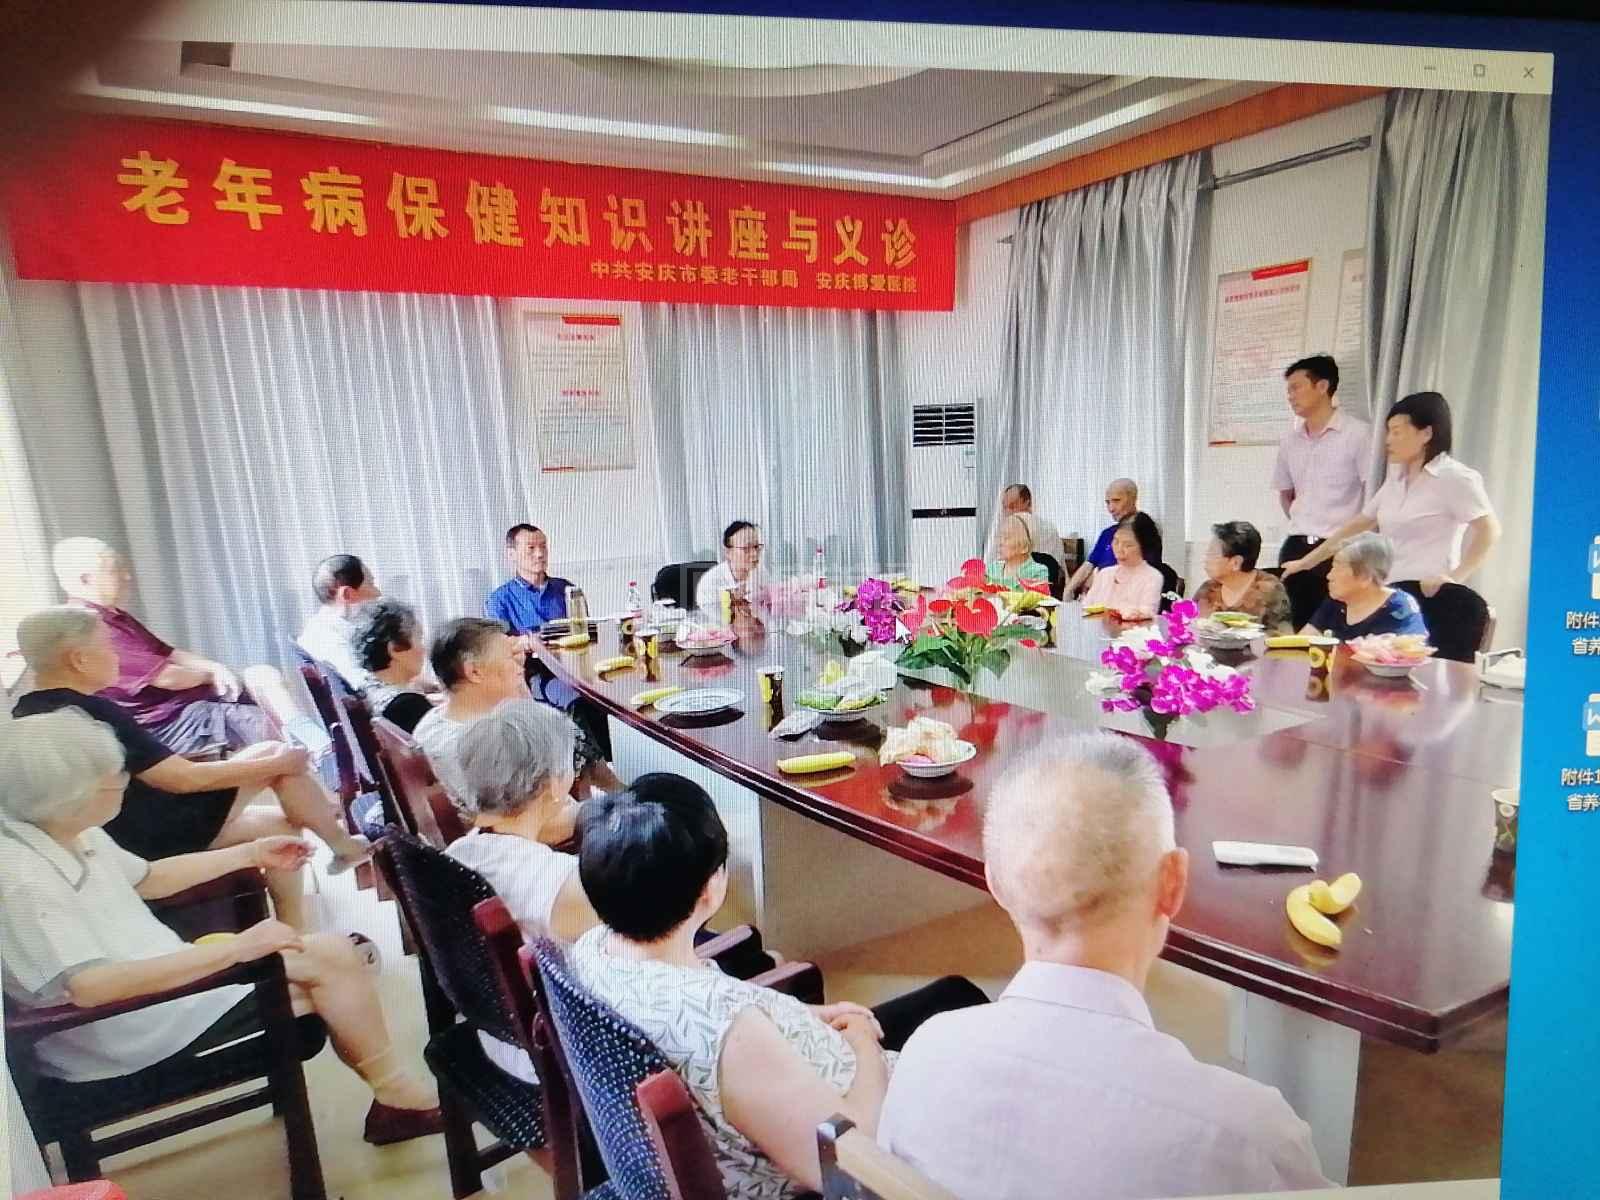 安庆老年公寓服务项目图1健康安全、营养均衡、味美可口